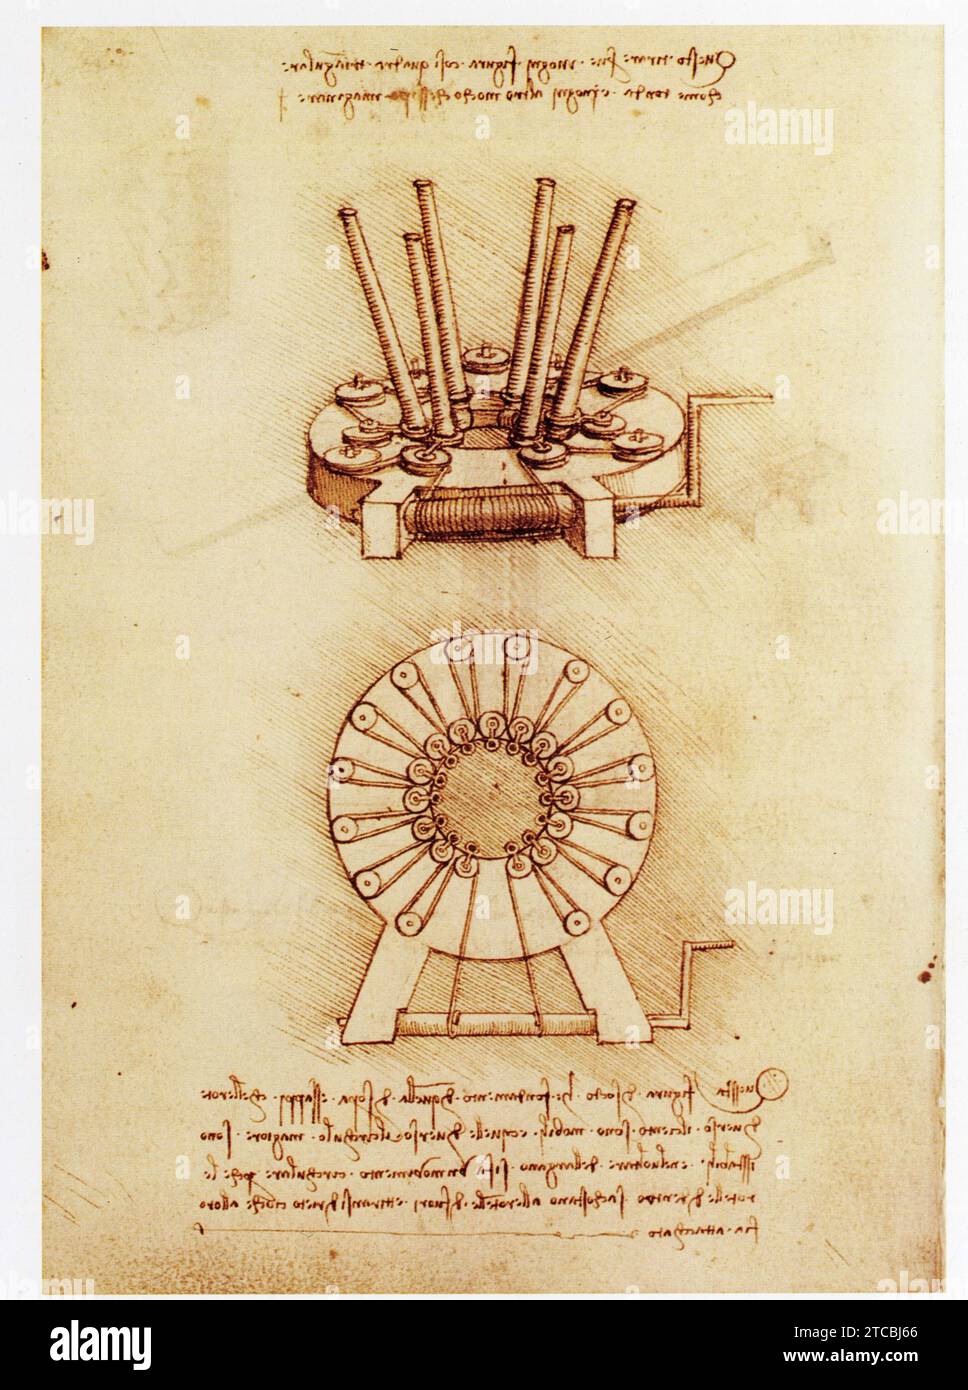 Leonardo da Vinci.1452-1519.Extenseur .Plan et vue axonométrique d'une machine qui tyre les poids de la périphérie vers le centre. Foto Stock